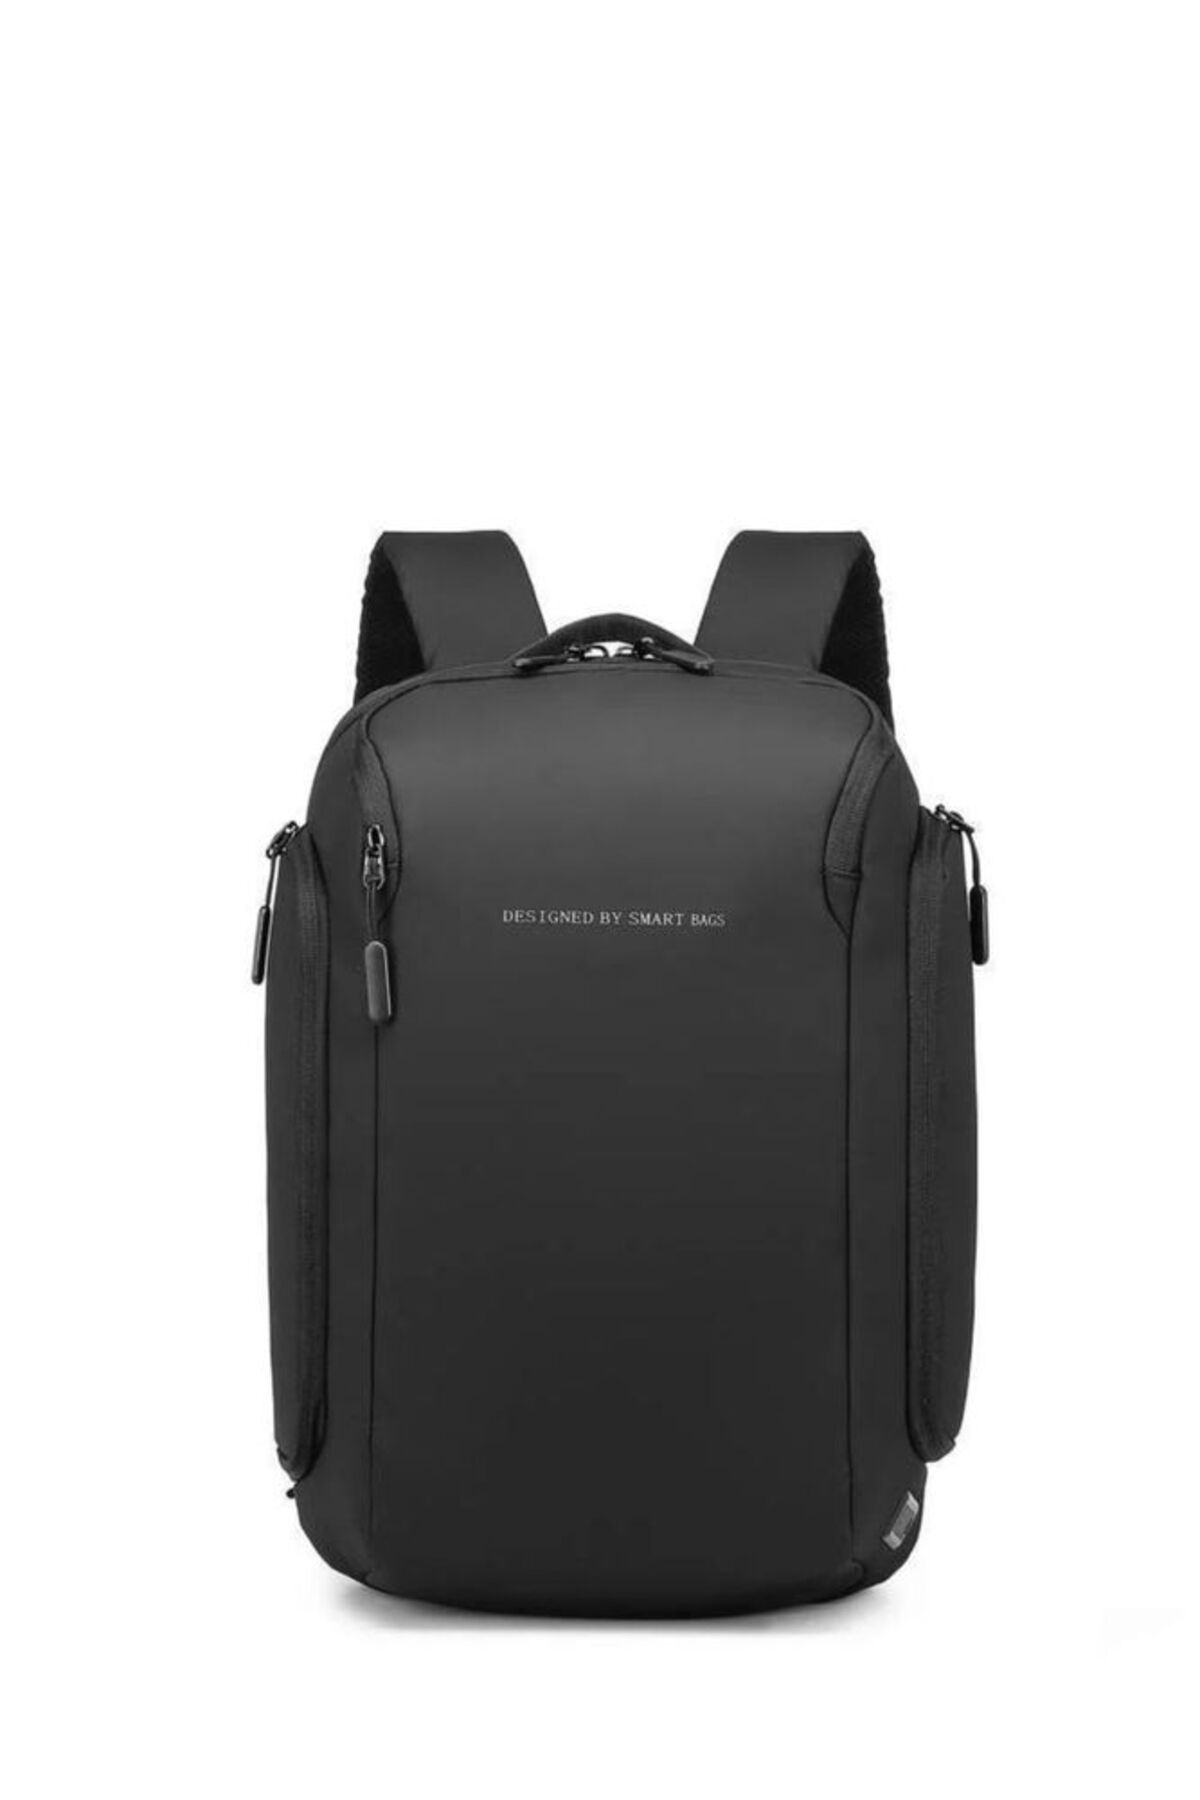 Smart Bags Tablet Boyu Teknoloji Business Sırt Çantası 8647-01